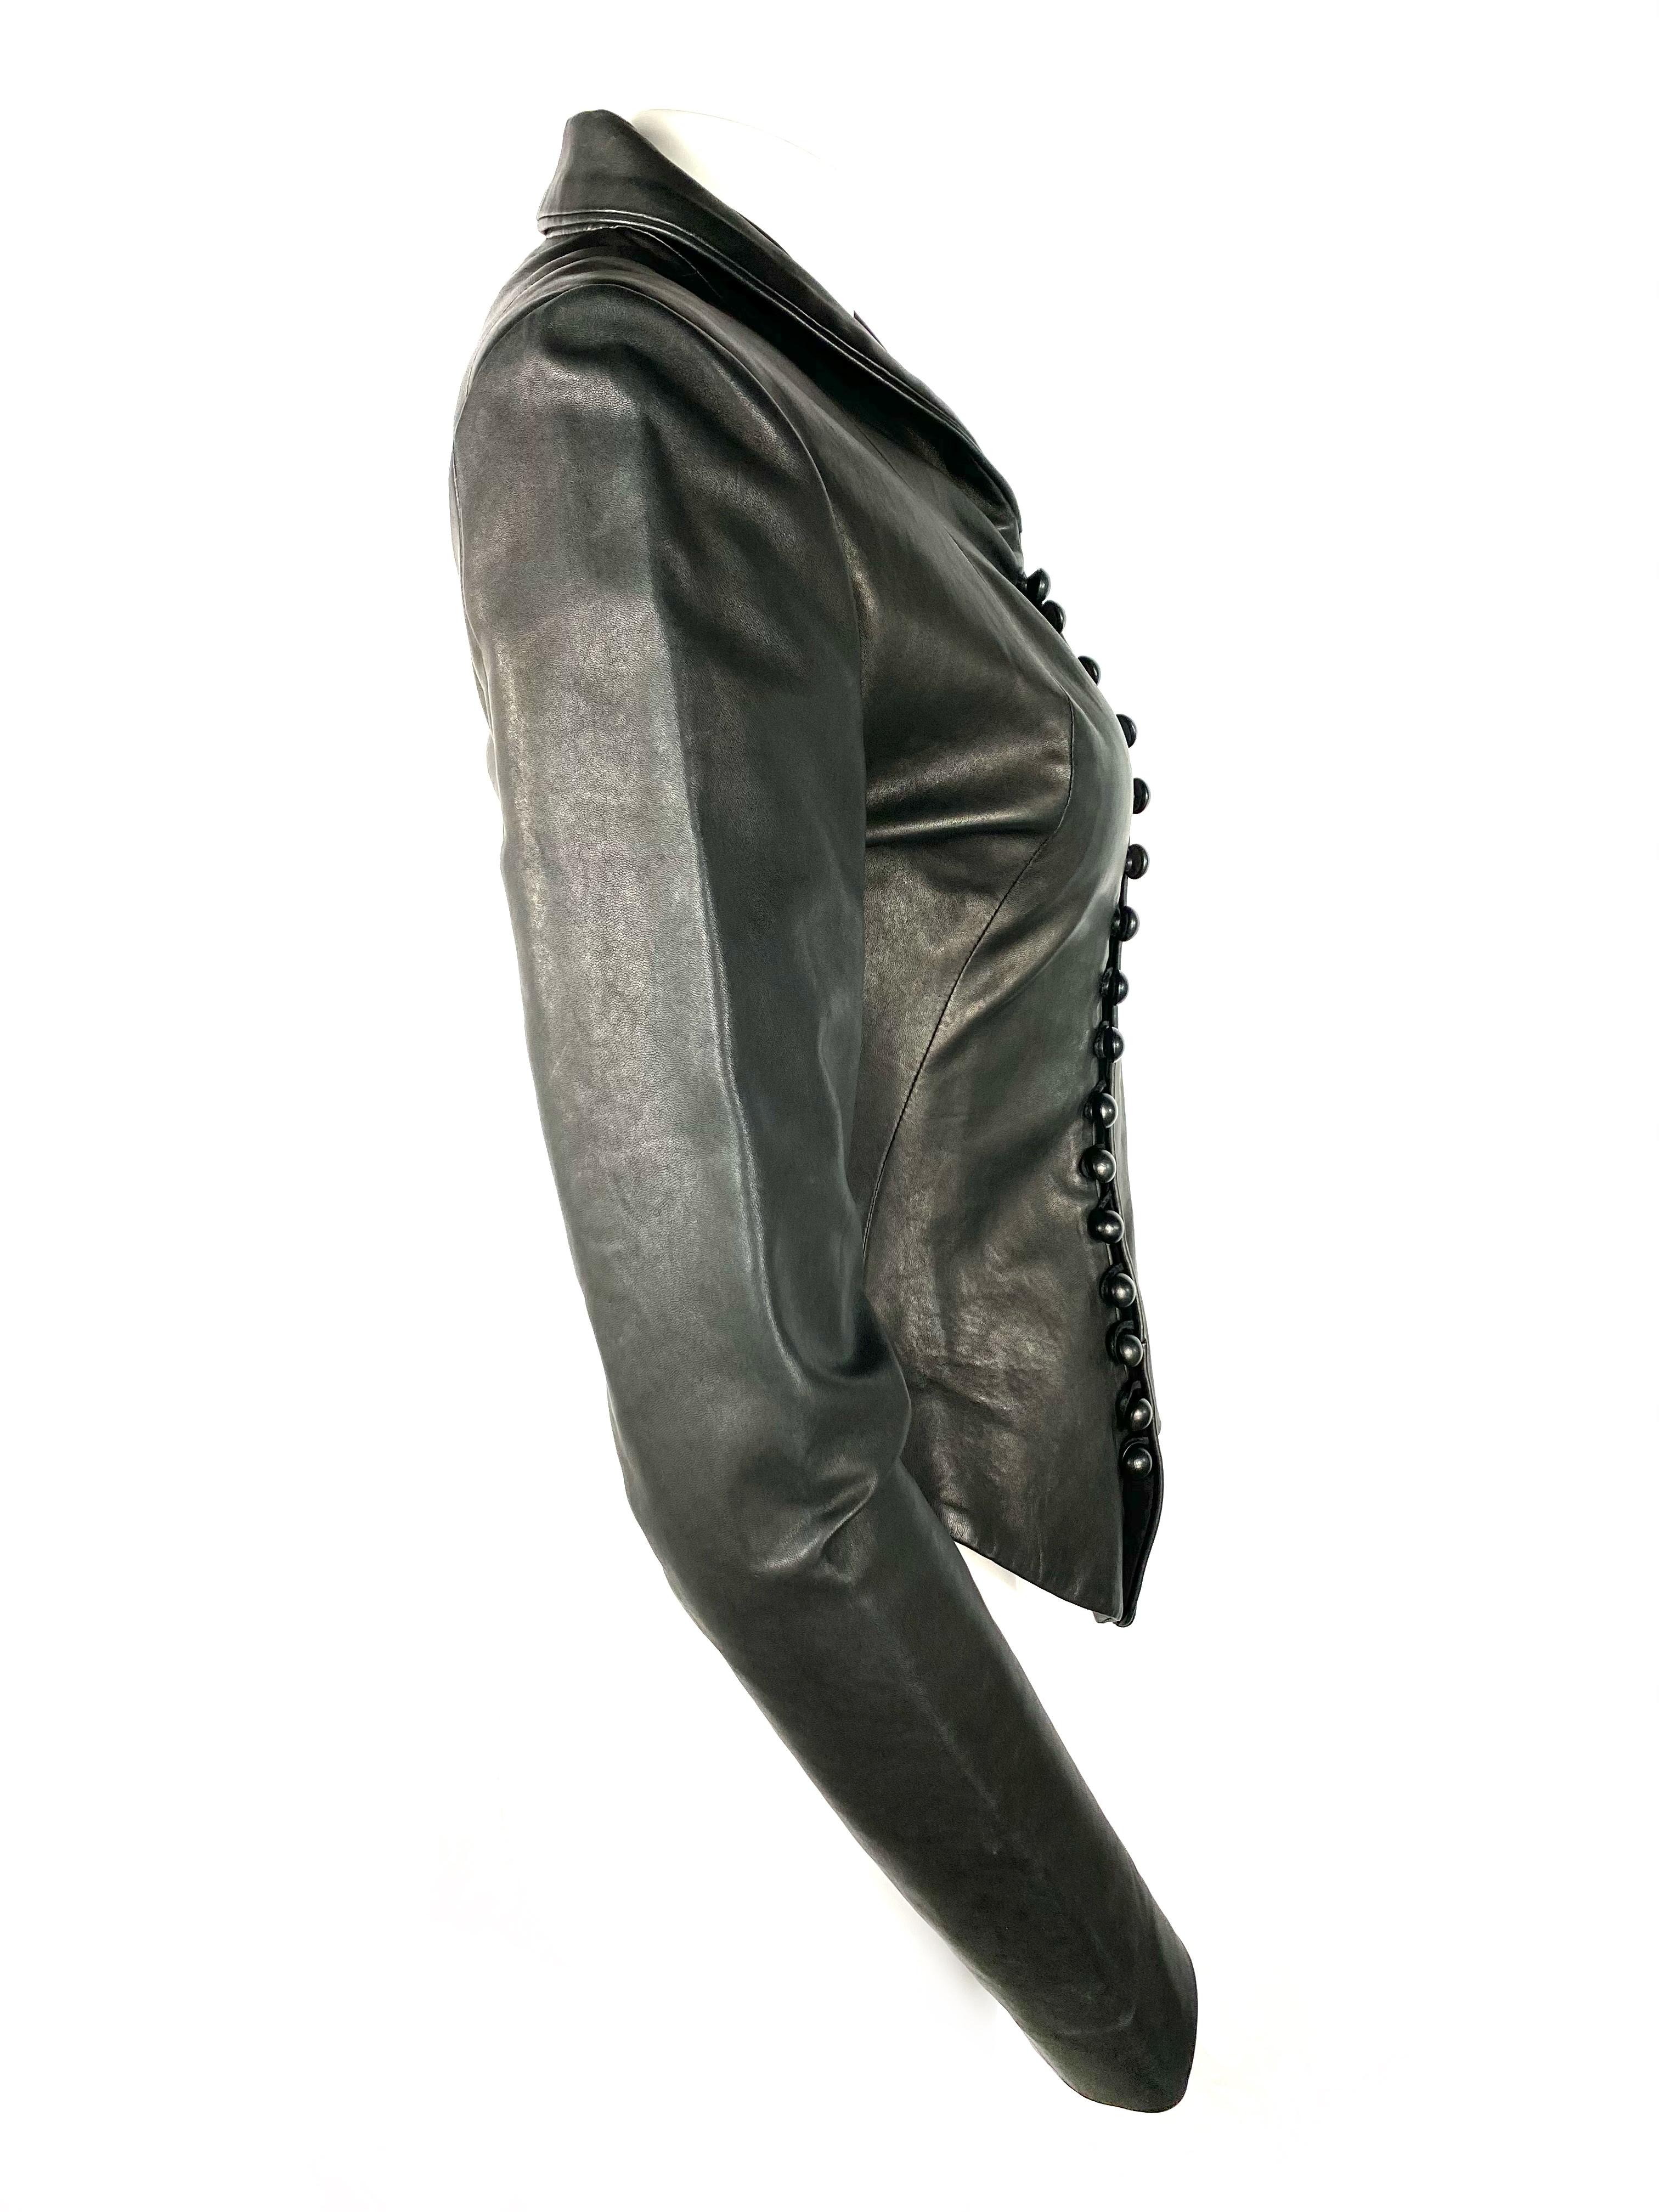 Women's Nina Ricci Black Leather Jacket, Size 36